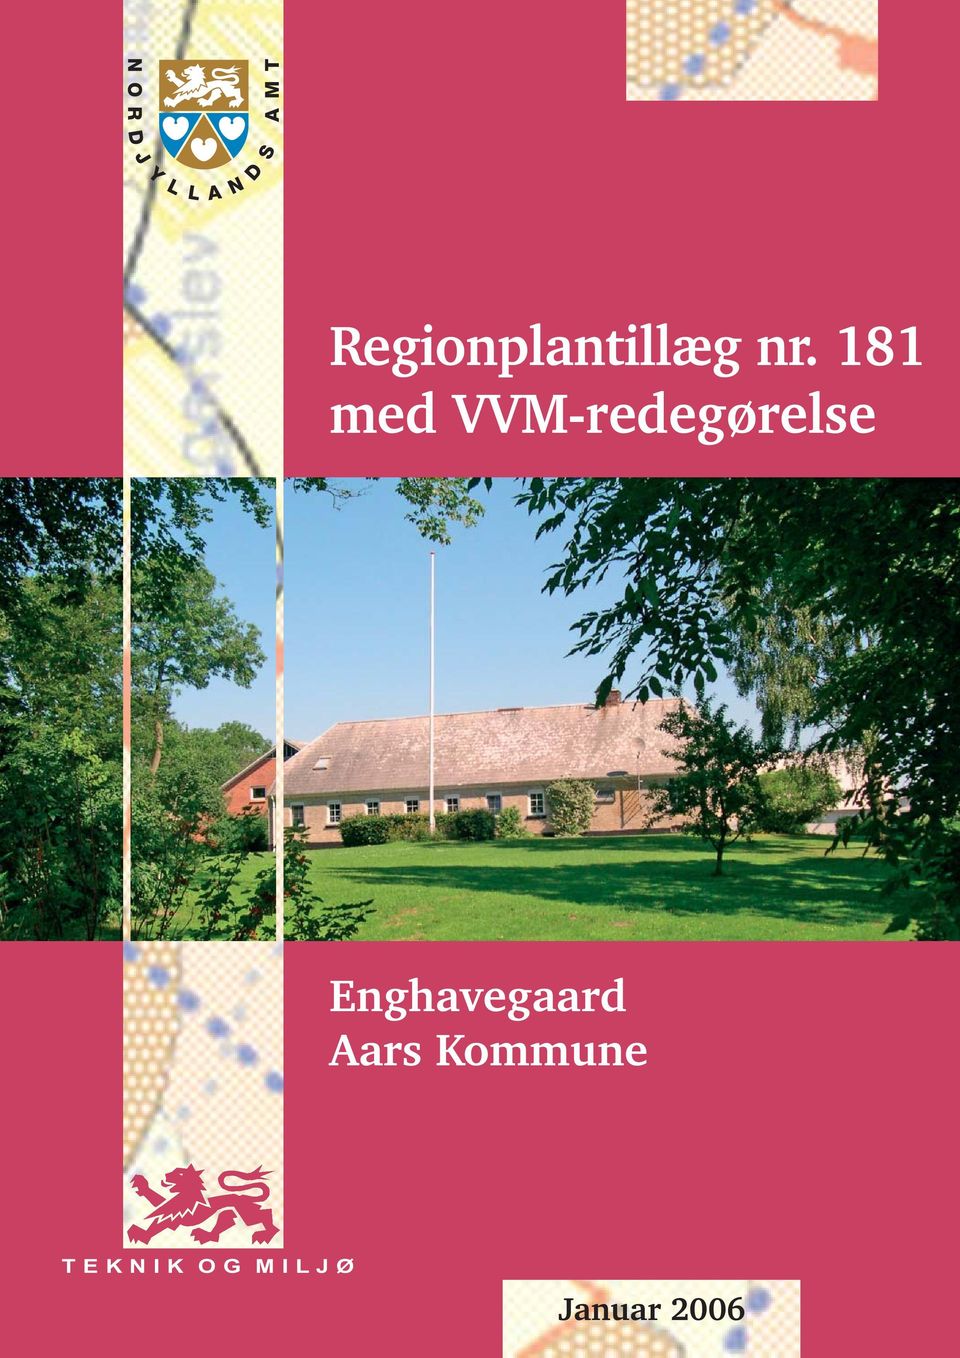 Enghavegaard Aars Kommune